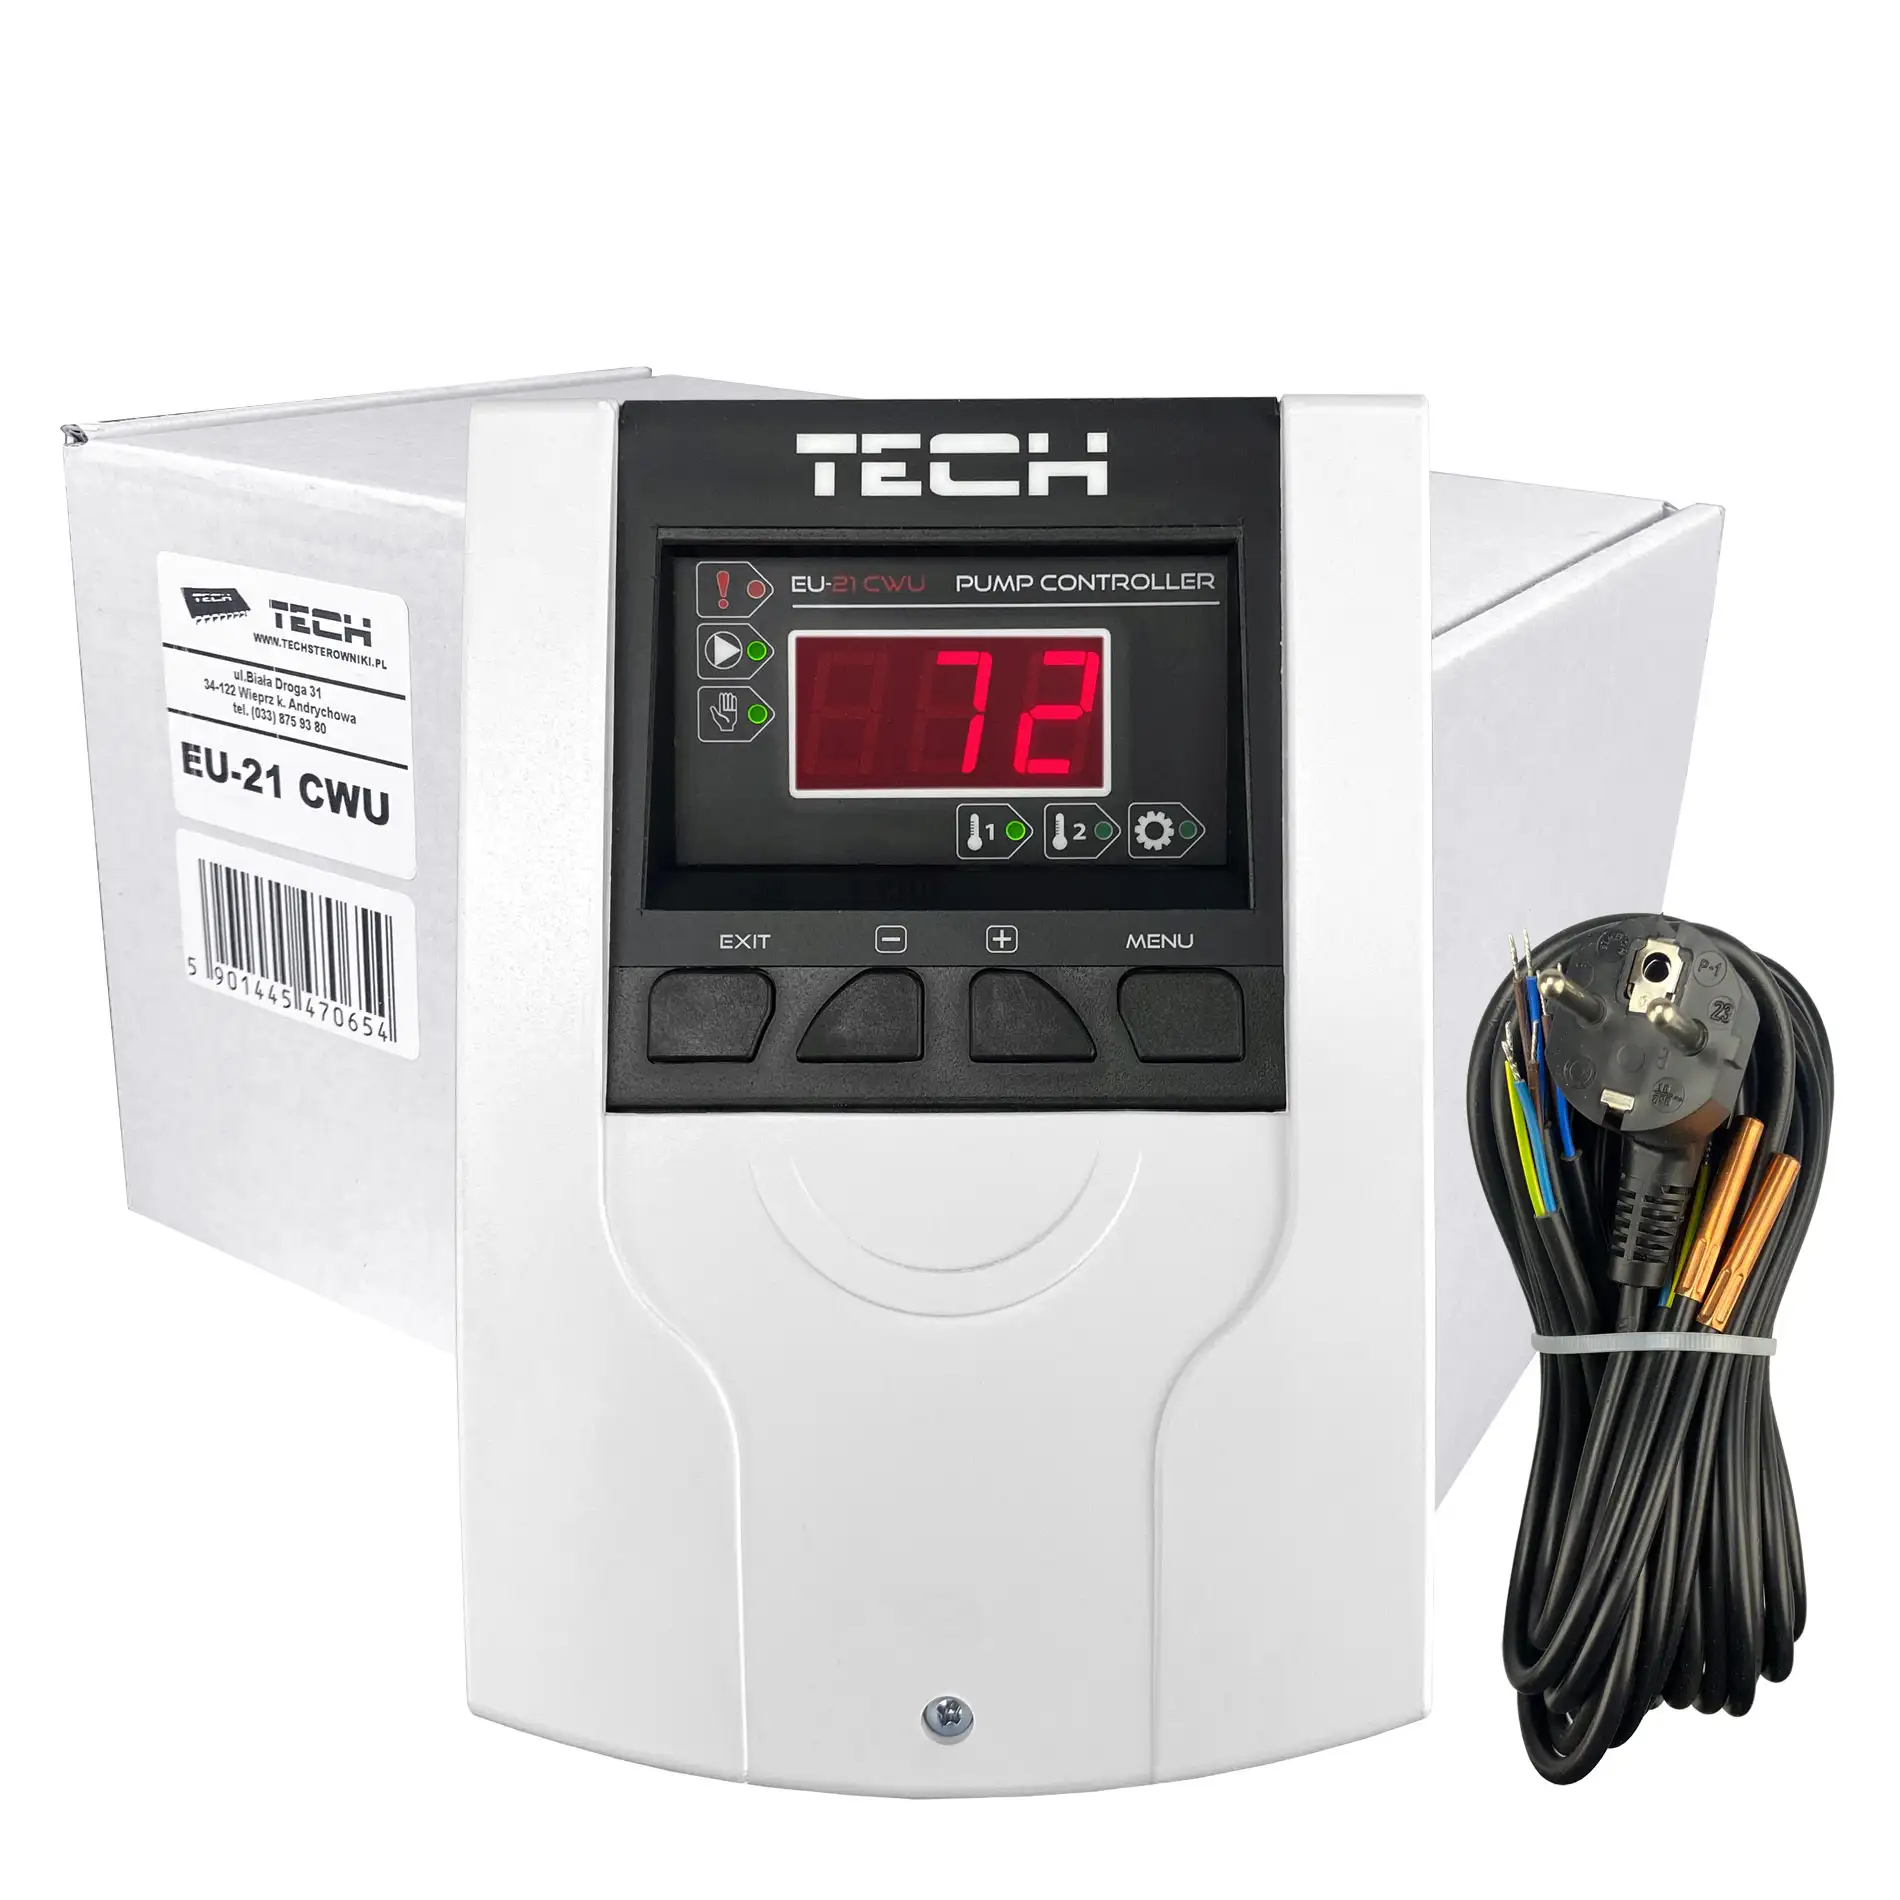 Tech EU-21 CWU Temperaturdifferenzregler für eine Umwälzpumpe mit eingebautem Pumpenschutz